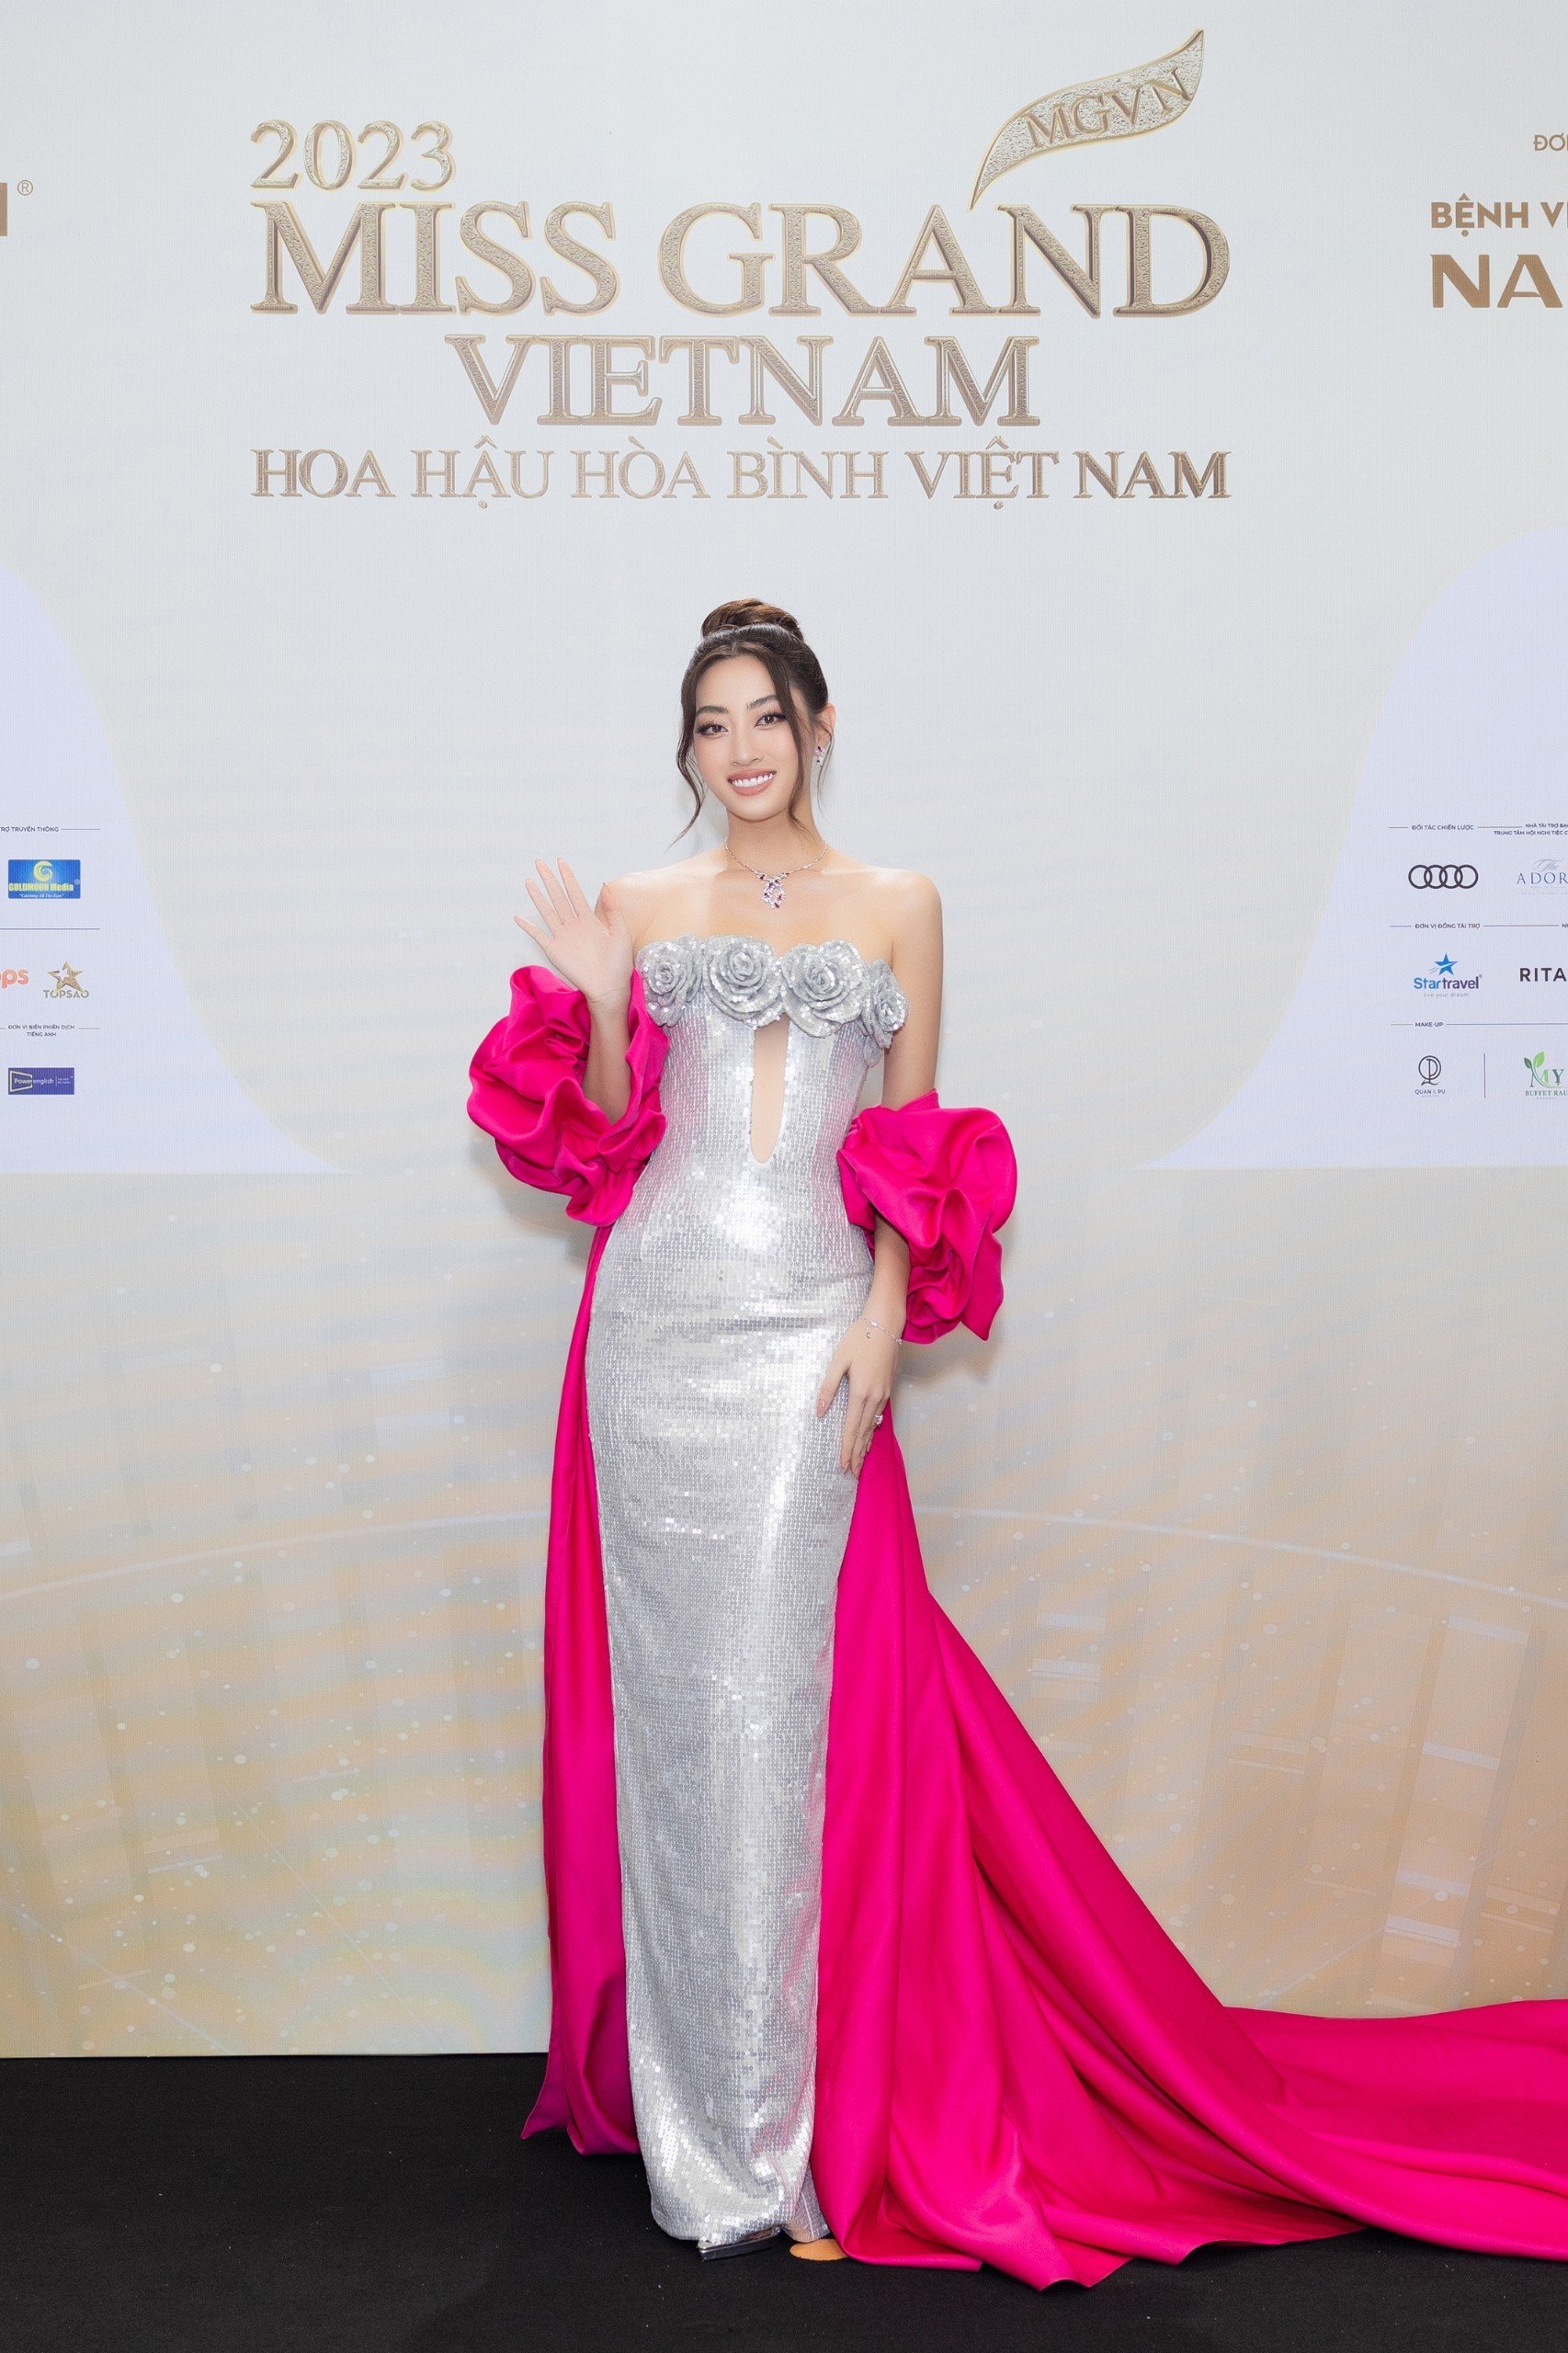 Thảm đỏ chung khảo toàn quốc Miss Grand Vietnam 2023: Huỳnh Minh Kiên khoe đường cong, Thuỳ Tiên kín đáo vẫn đẹp - ảnh 12